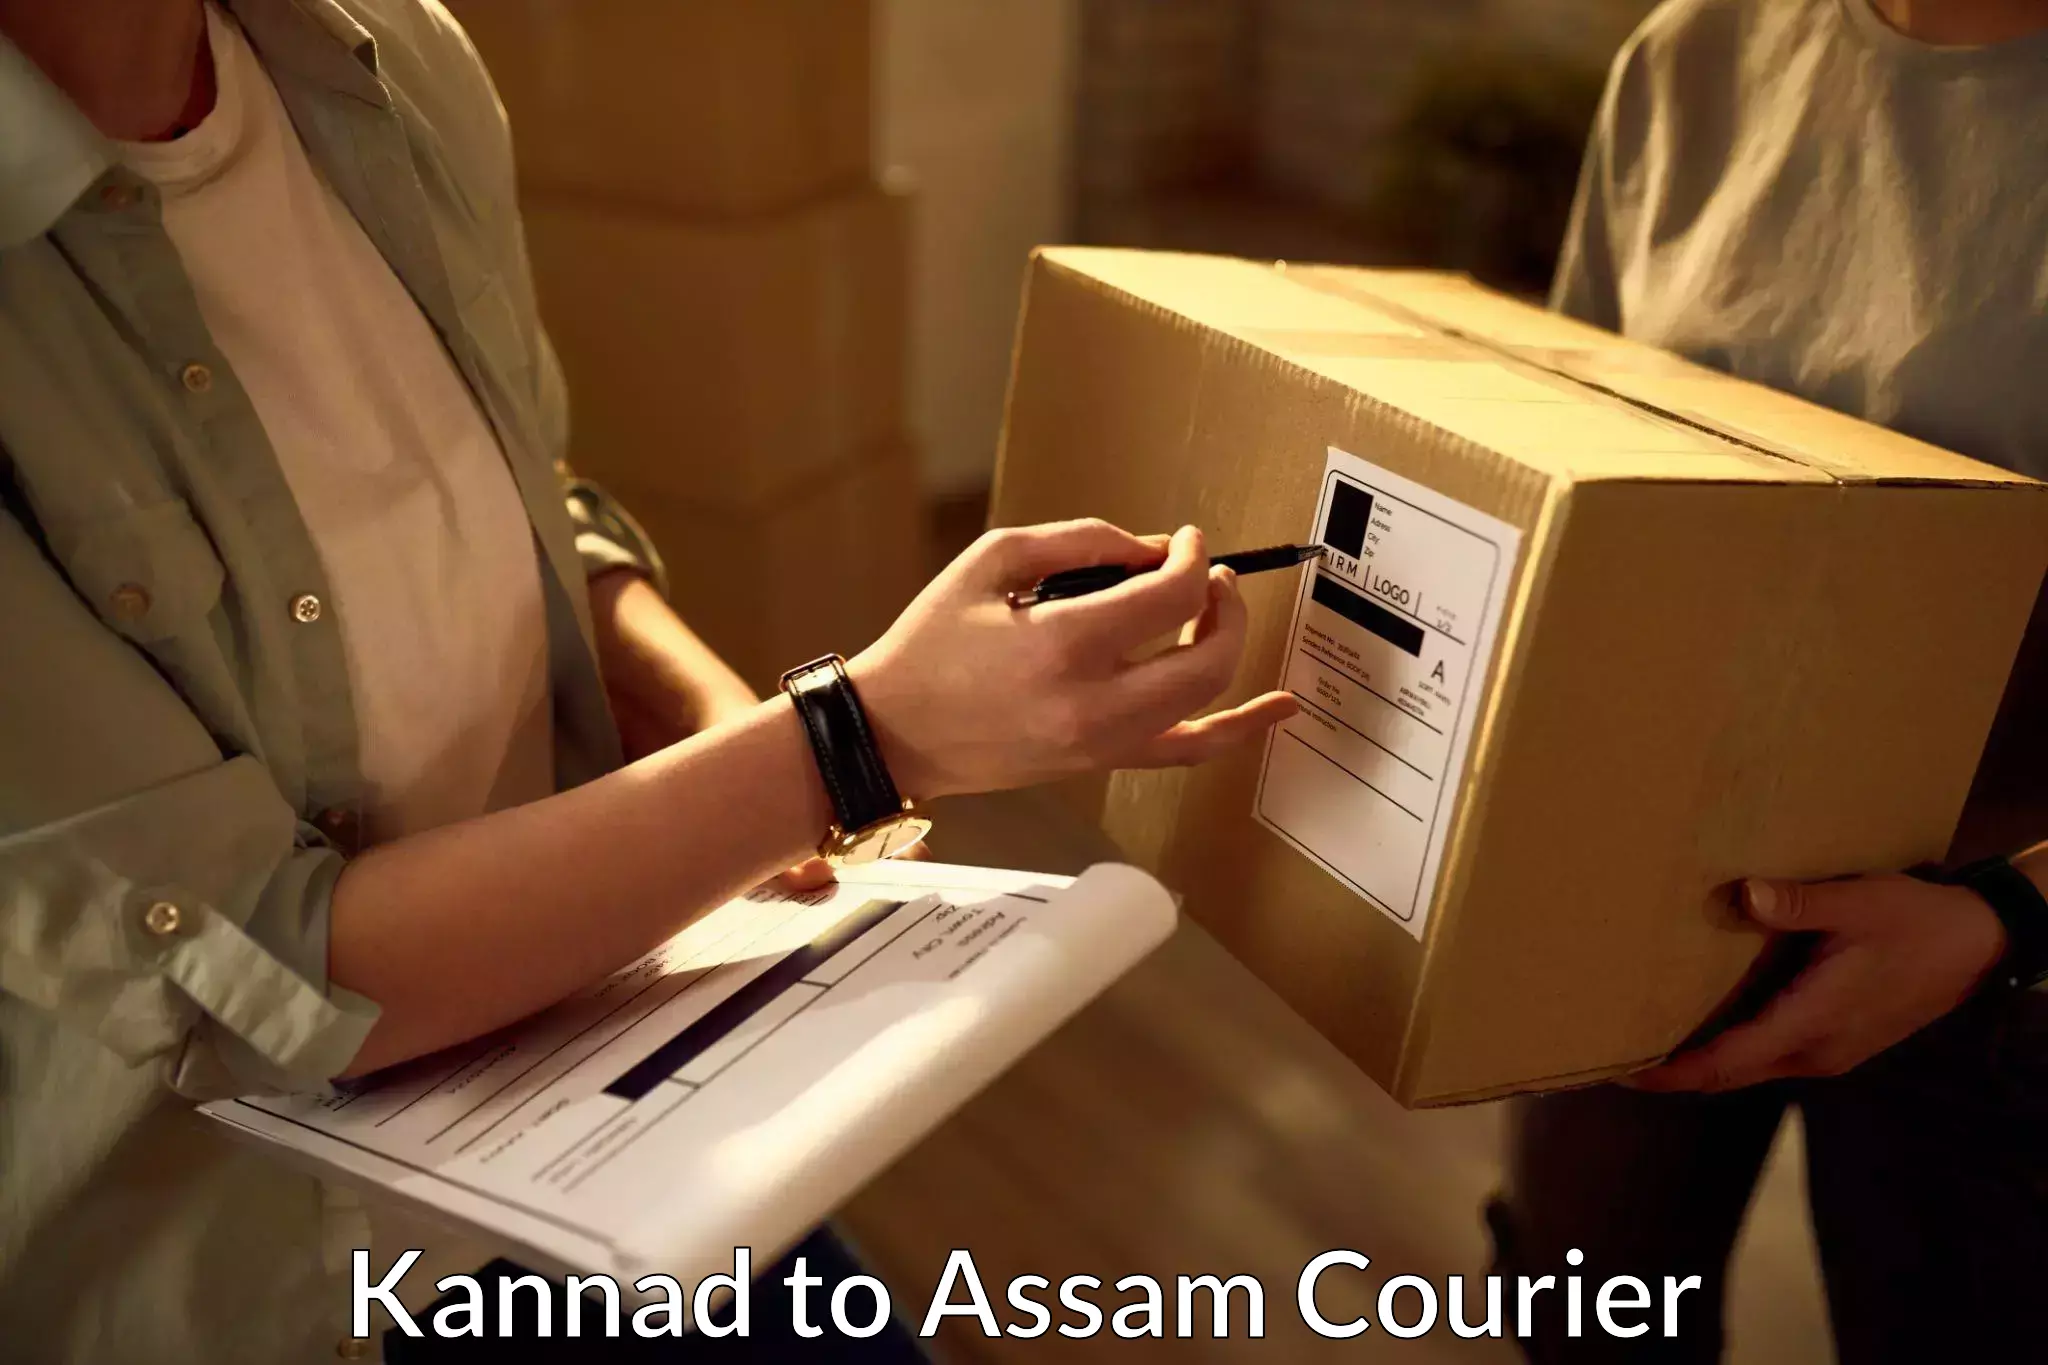 Specialized shipment handling Kannad to Amoni